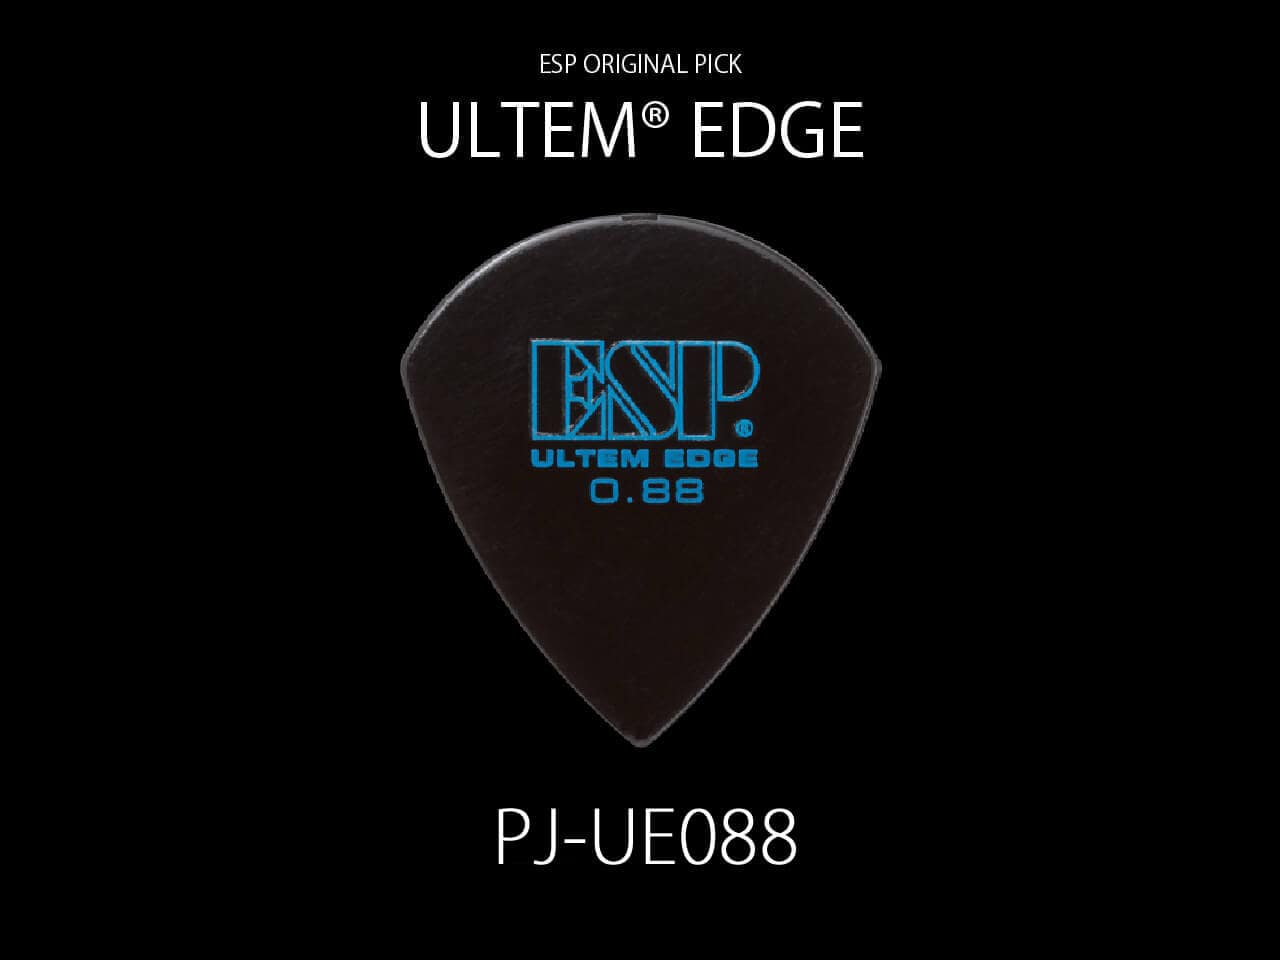 ESP(イーエスピー) Original Pick Series PJ-UE088 / ULTEM® EDGE